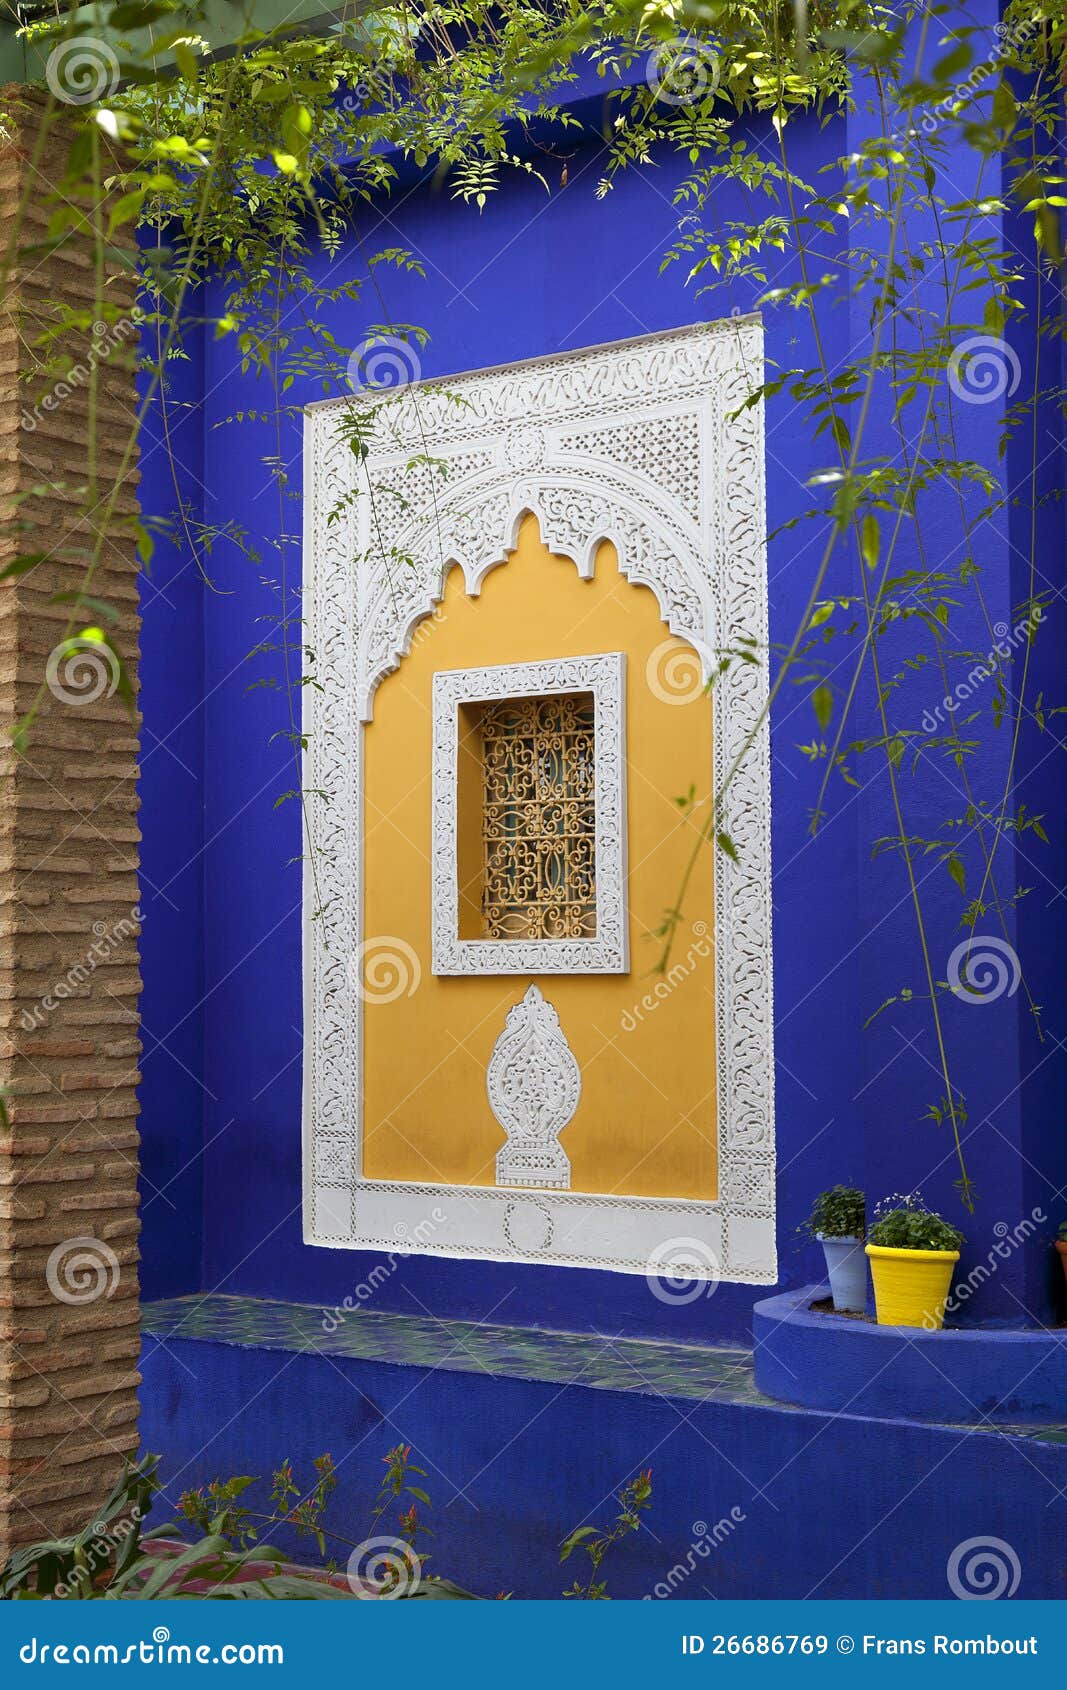 jardin majorelle in marrakesh